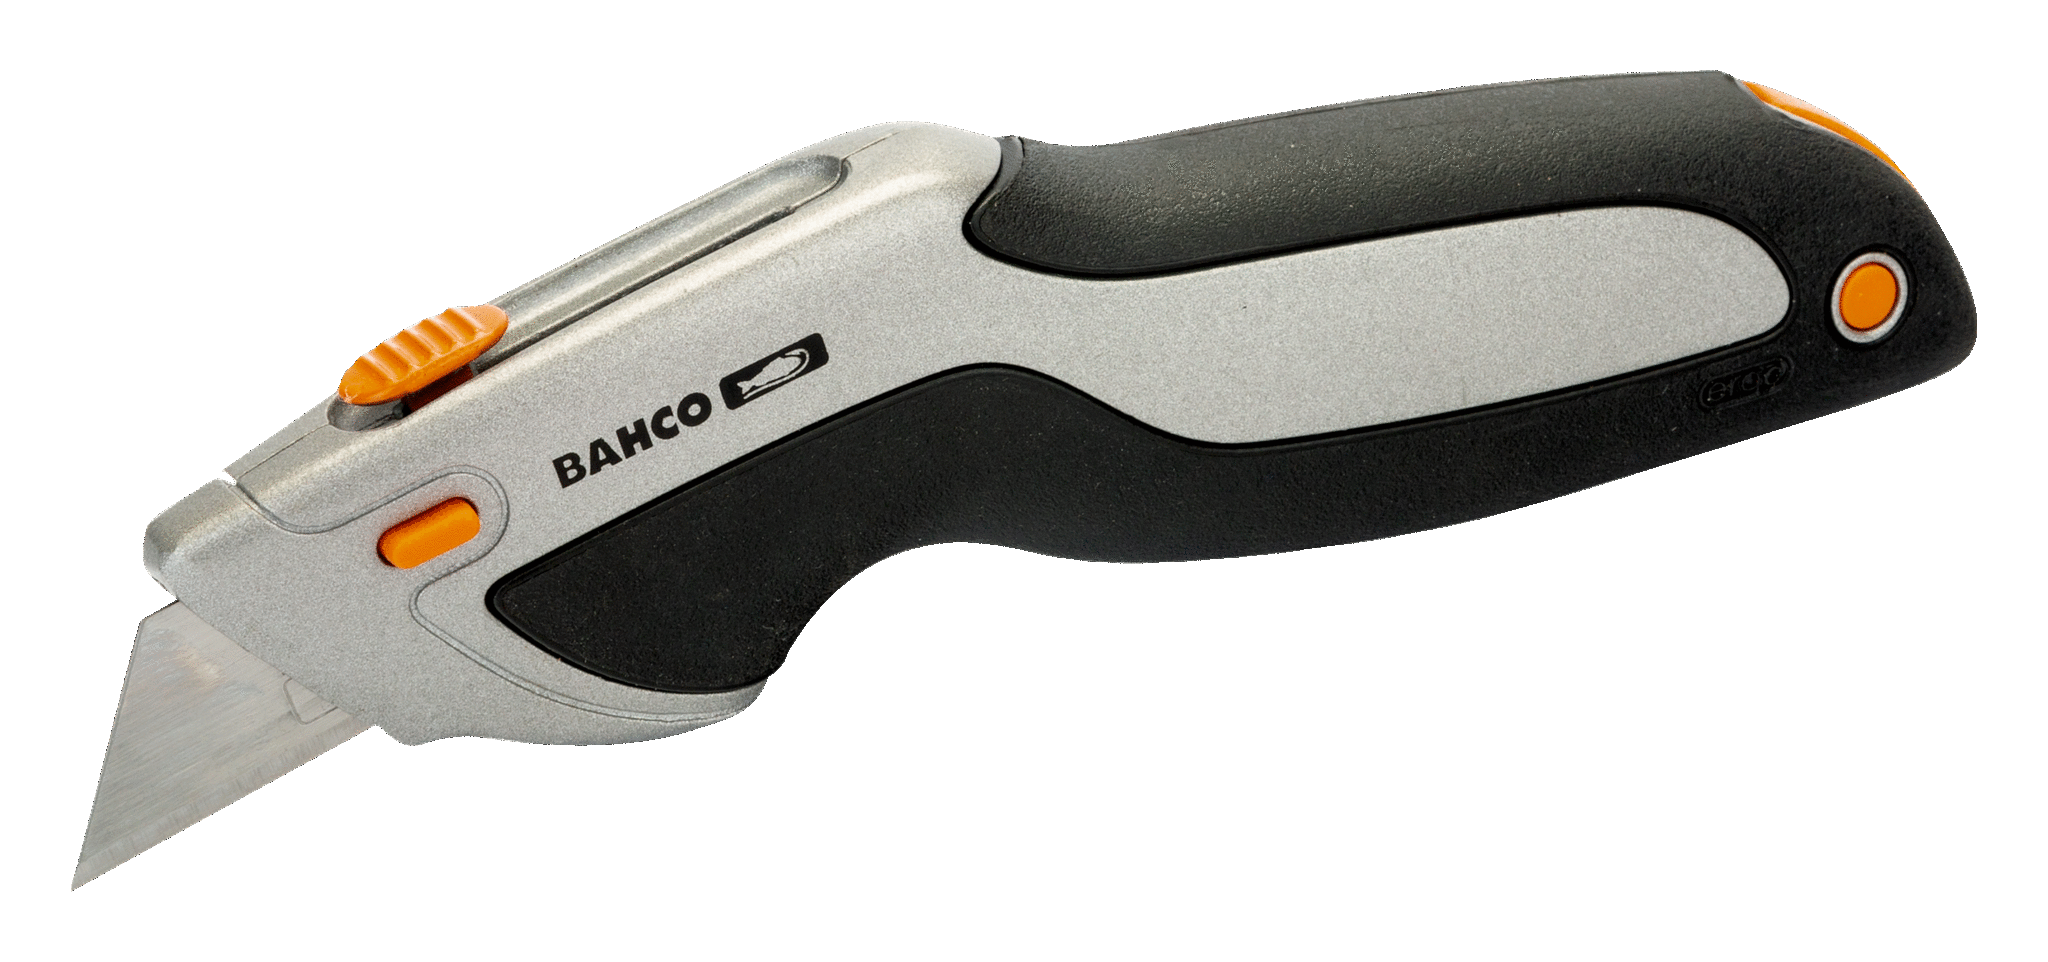 Bahco KBGU-100P Utility Knife Blades